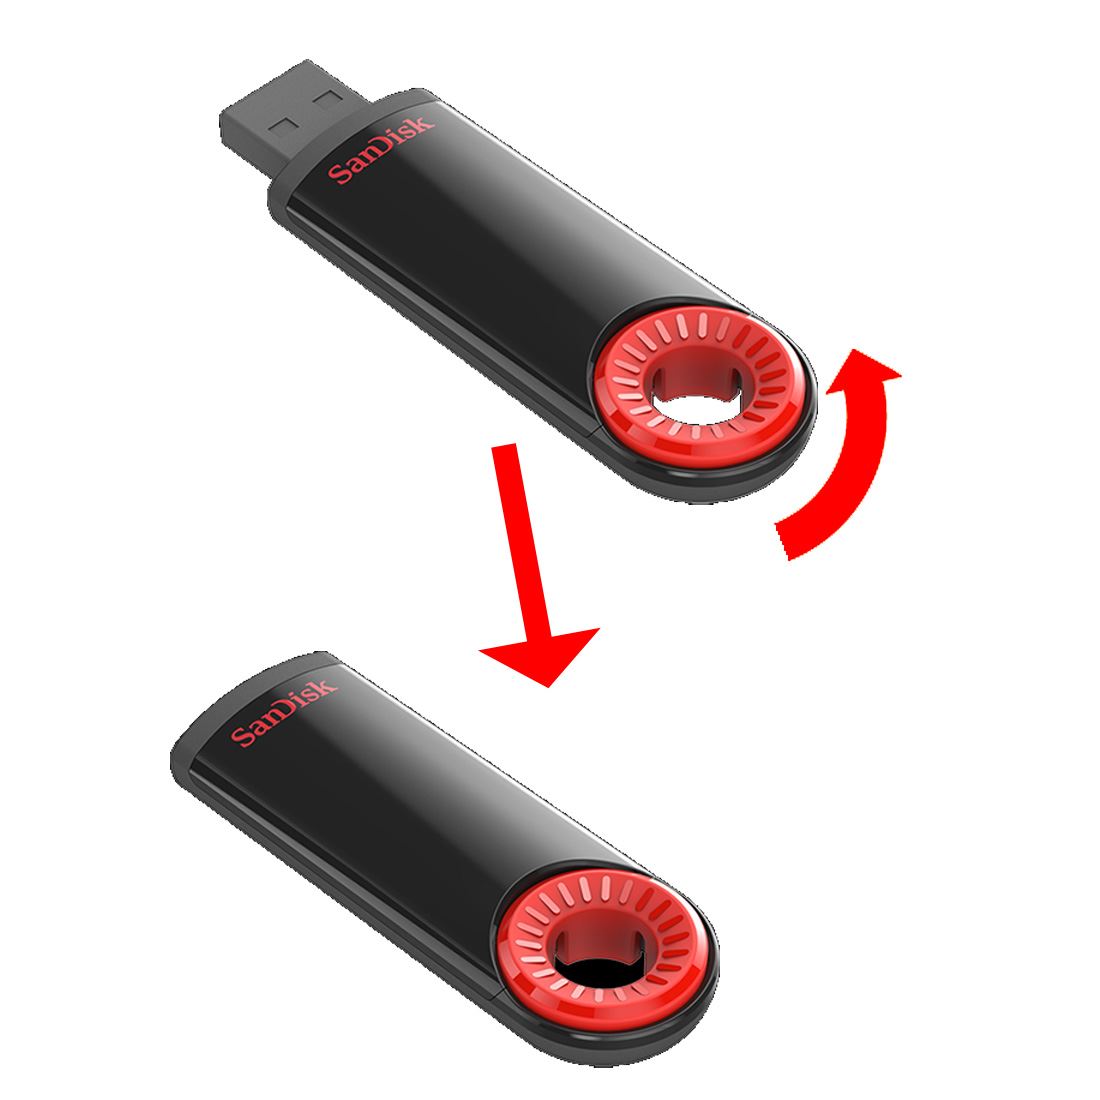 фото USB Флеш-накопитель SanDisk USB  32GB  Cruzer Dial, черный, красный